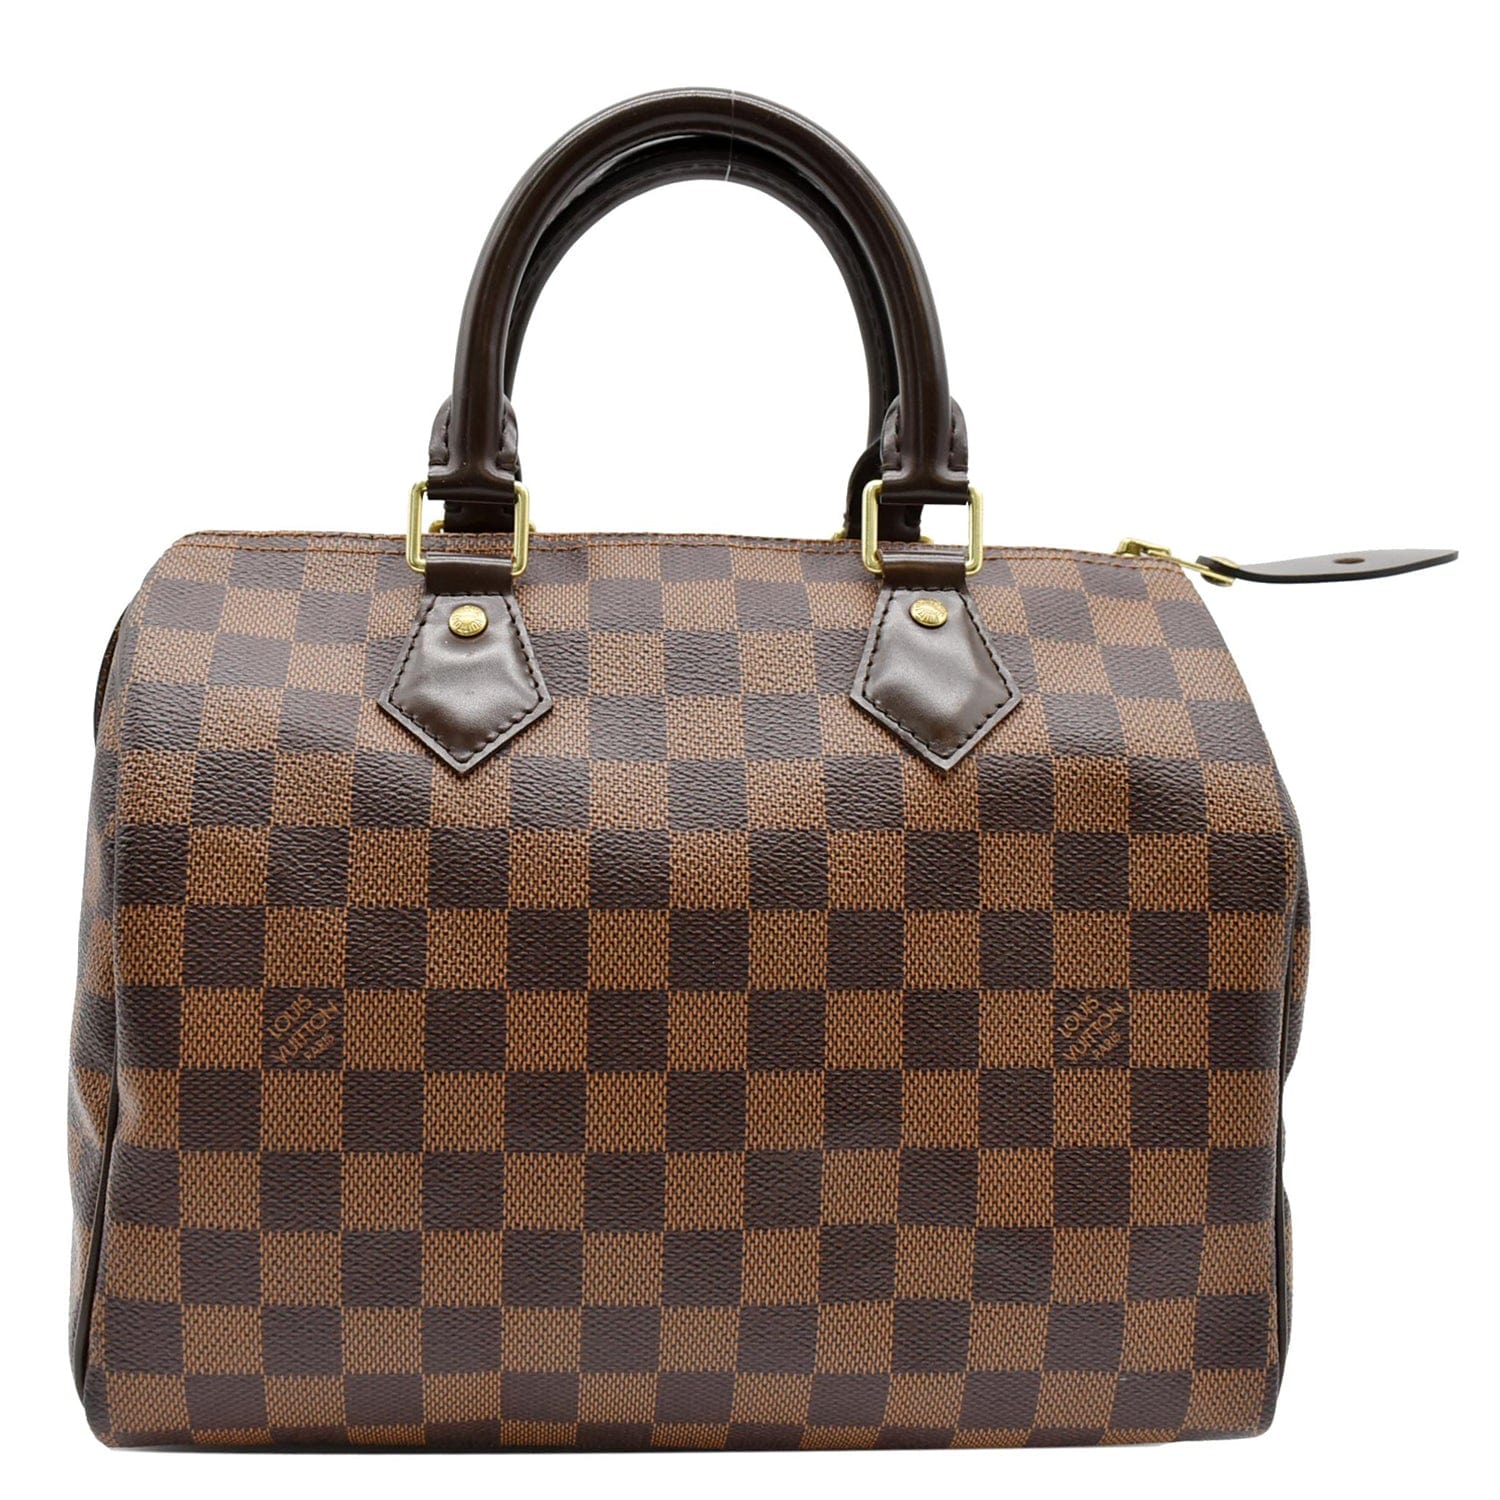 Louis Vuitton Speedy Damier Ebene (Without Accessories) 25 Brown